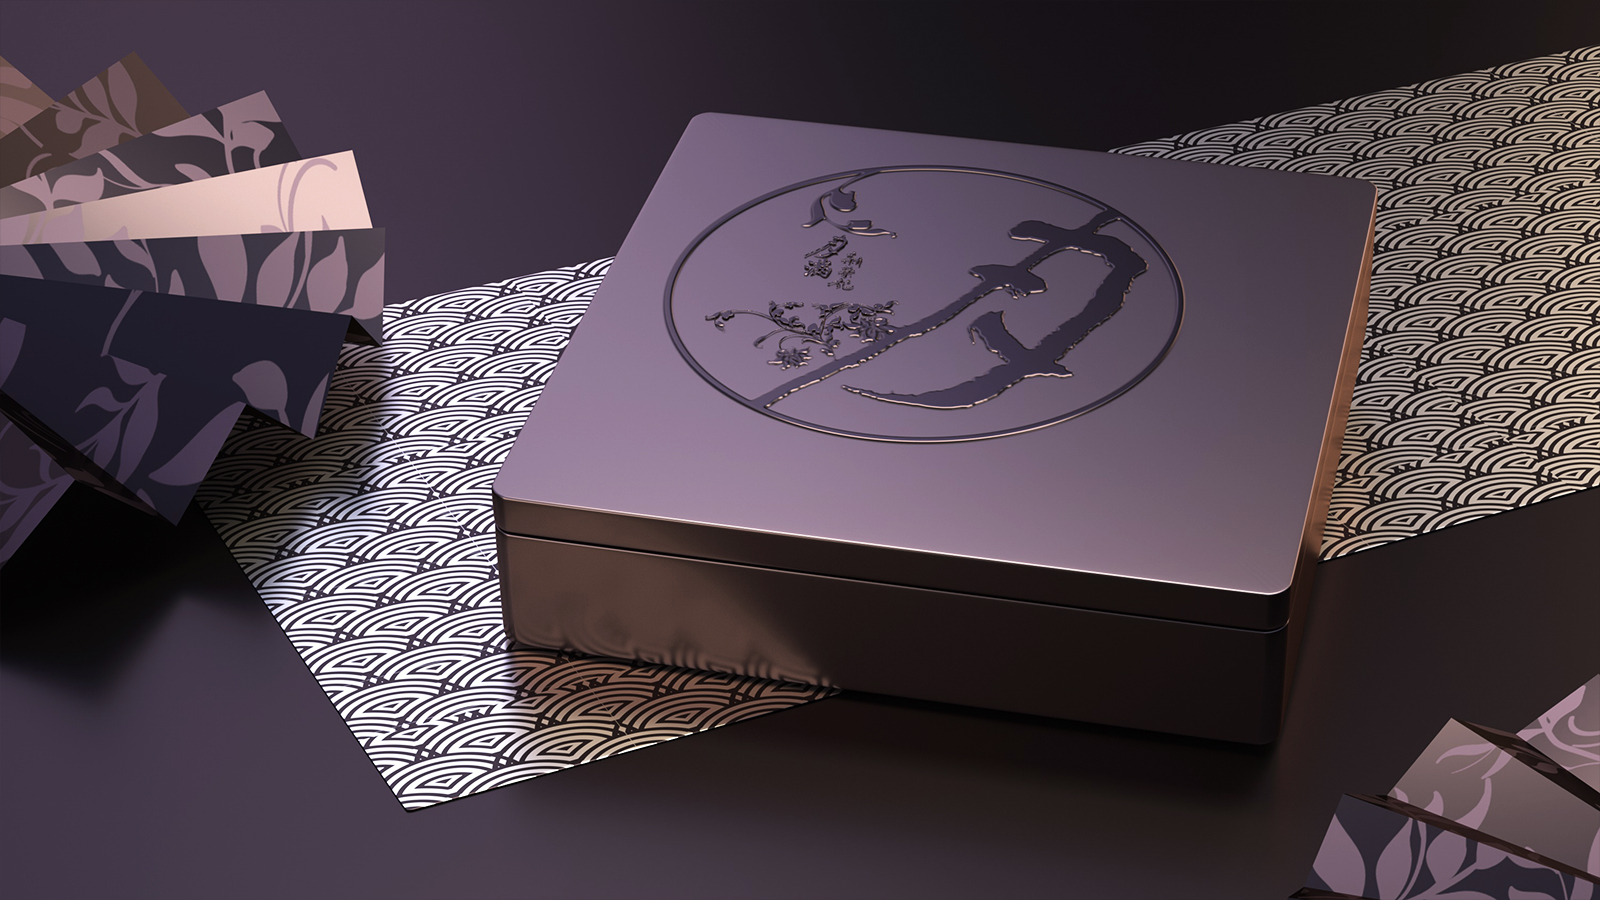 原创包装设计/广东新荣记/月饼礼盒包装设计 米克包装设计